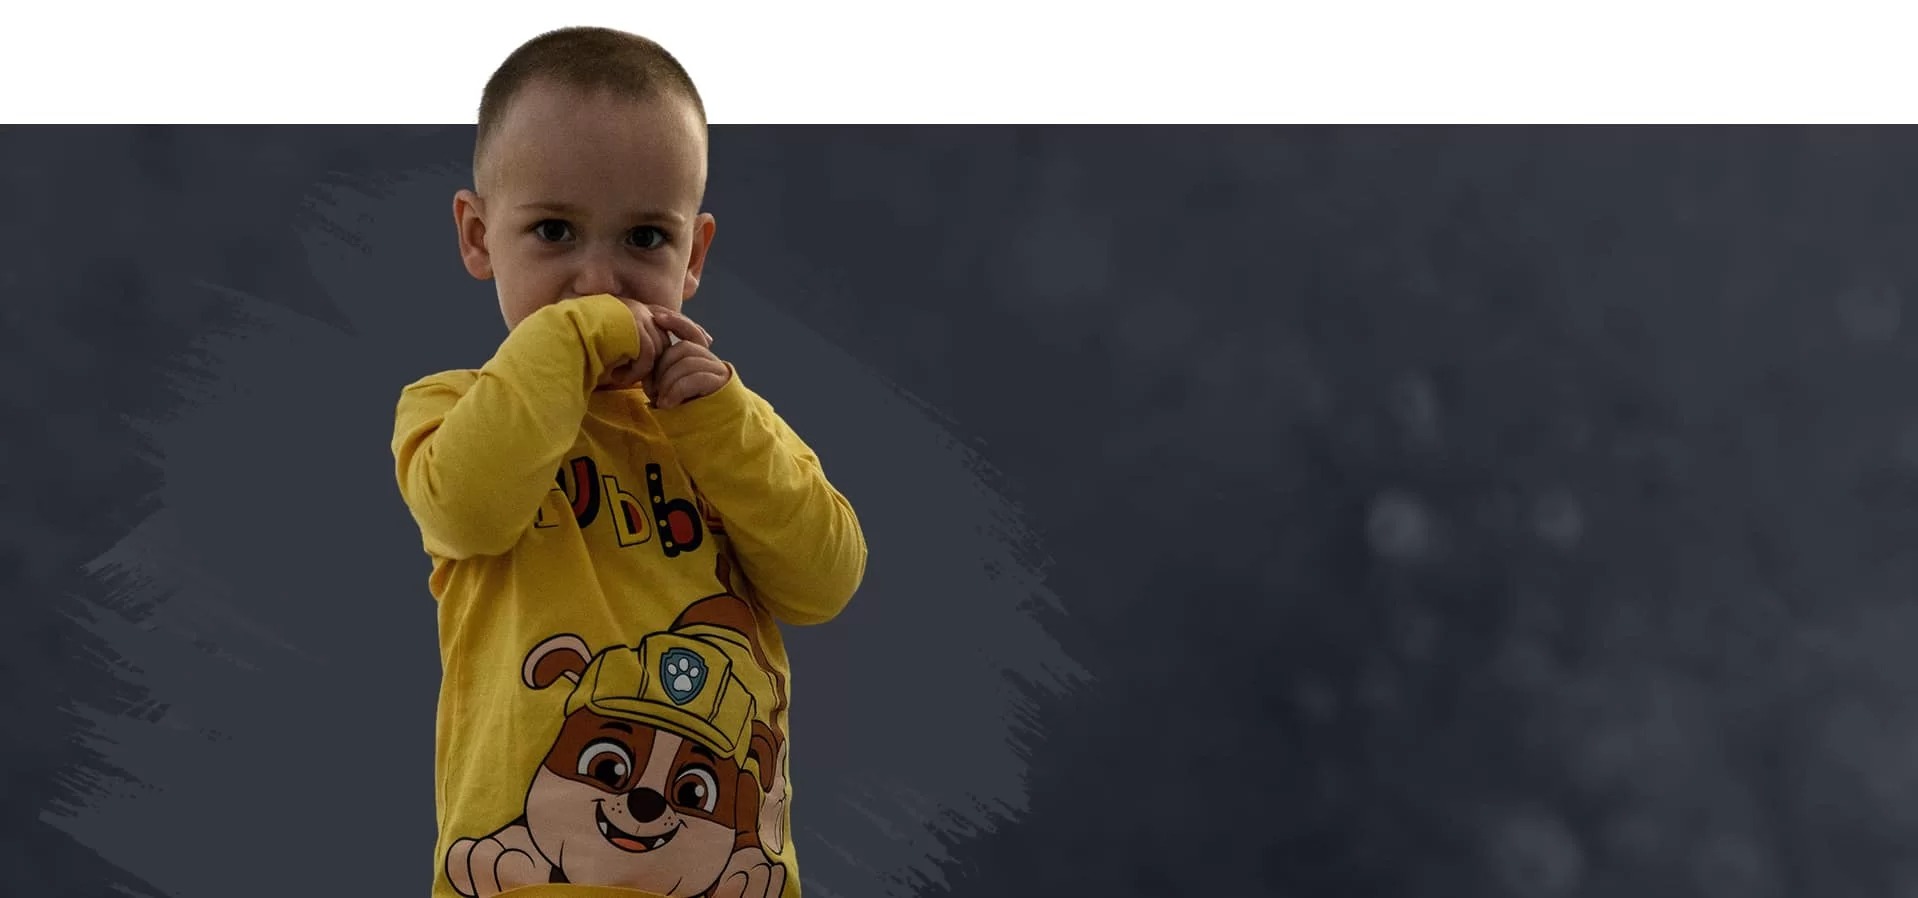 Fotografie a unui copil cu bluza galbena